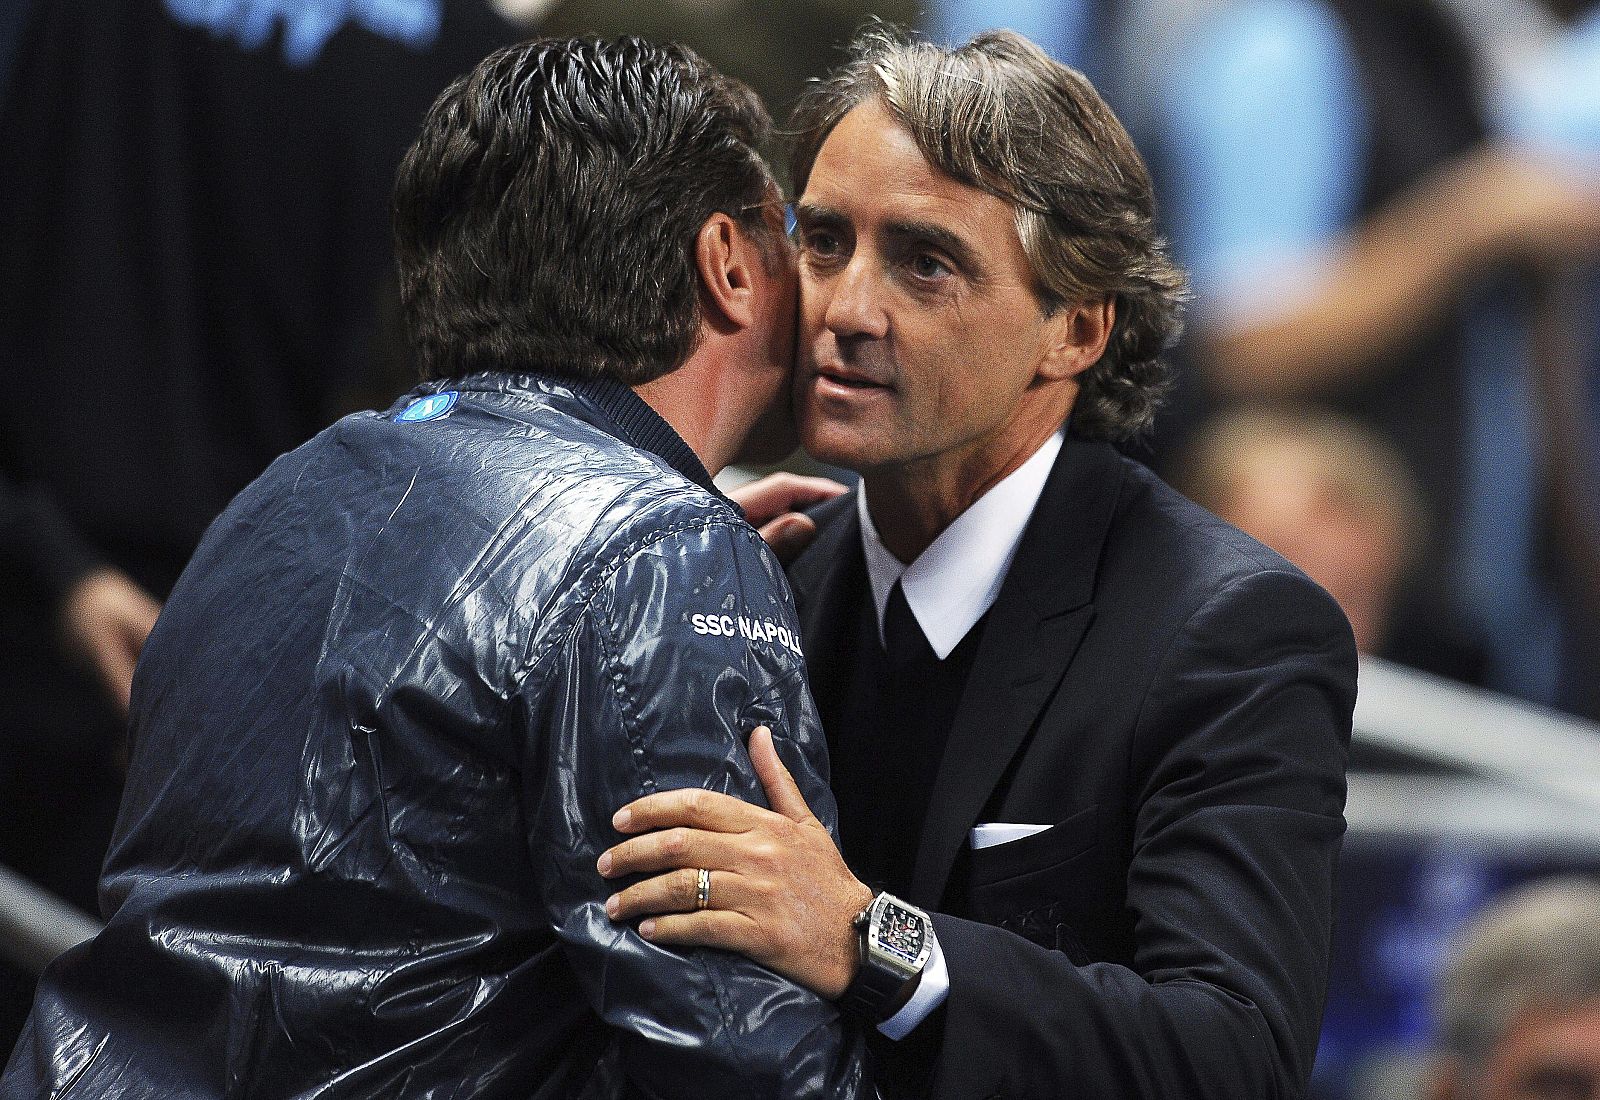 Fotografía de archivo fechada el 14 de septiembre de 2011, del entonces entrenador del Nápoles, Walter Mazzarri (i), mientras saluda al entonces técnico del Manchester City, Roberto Mancini.